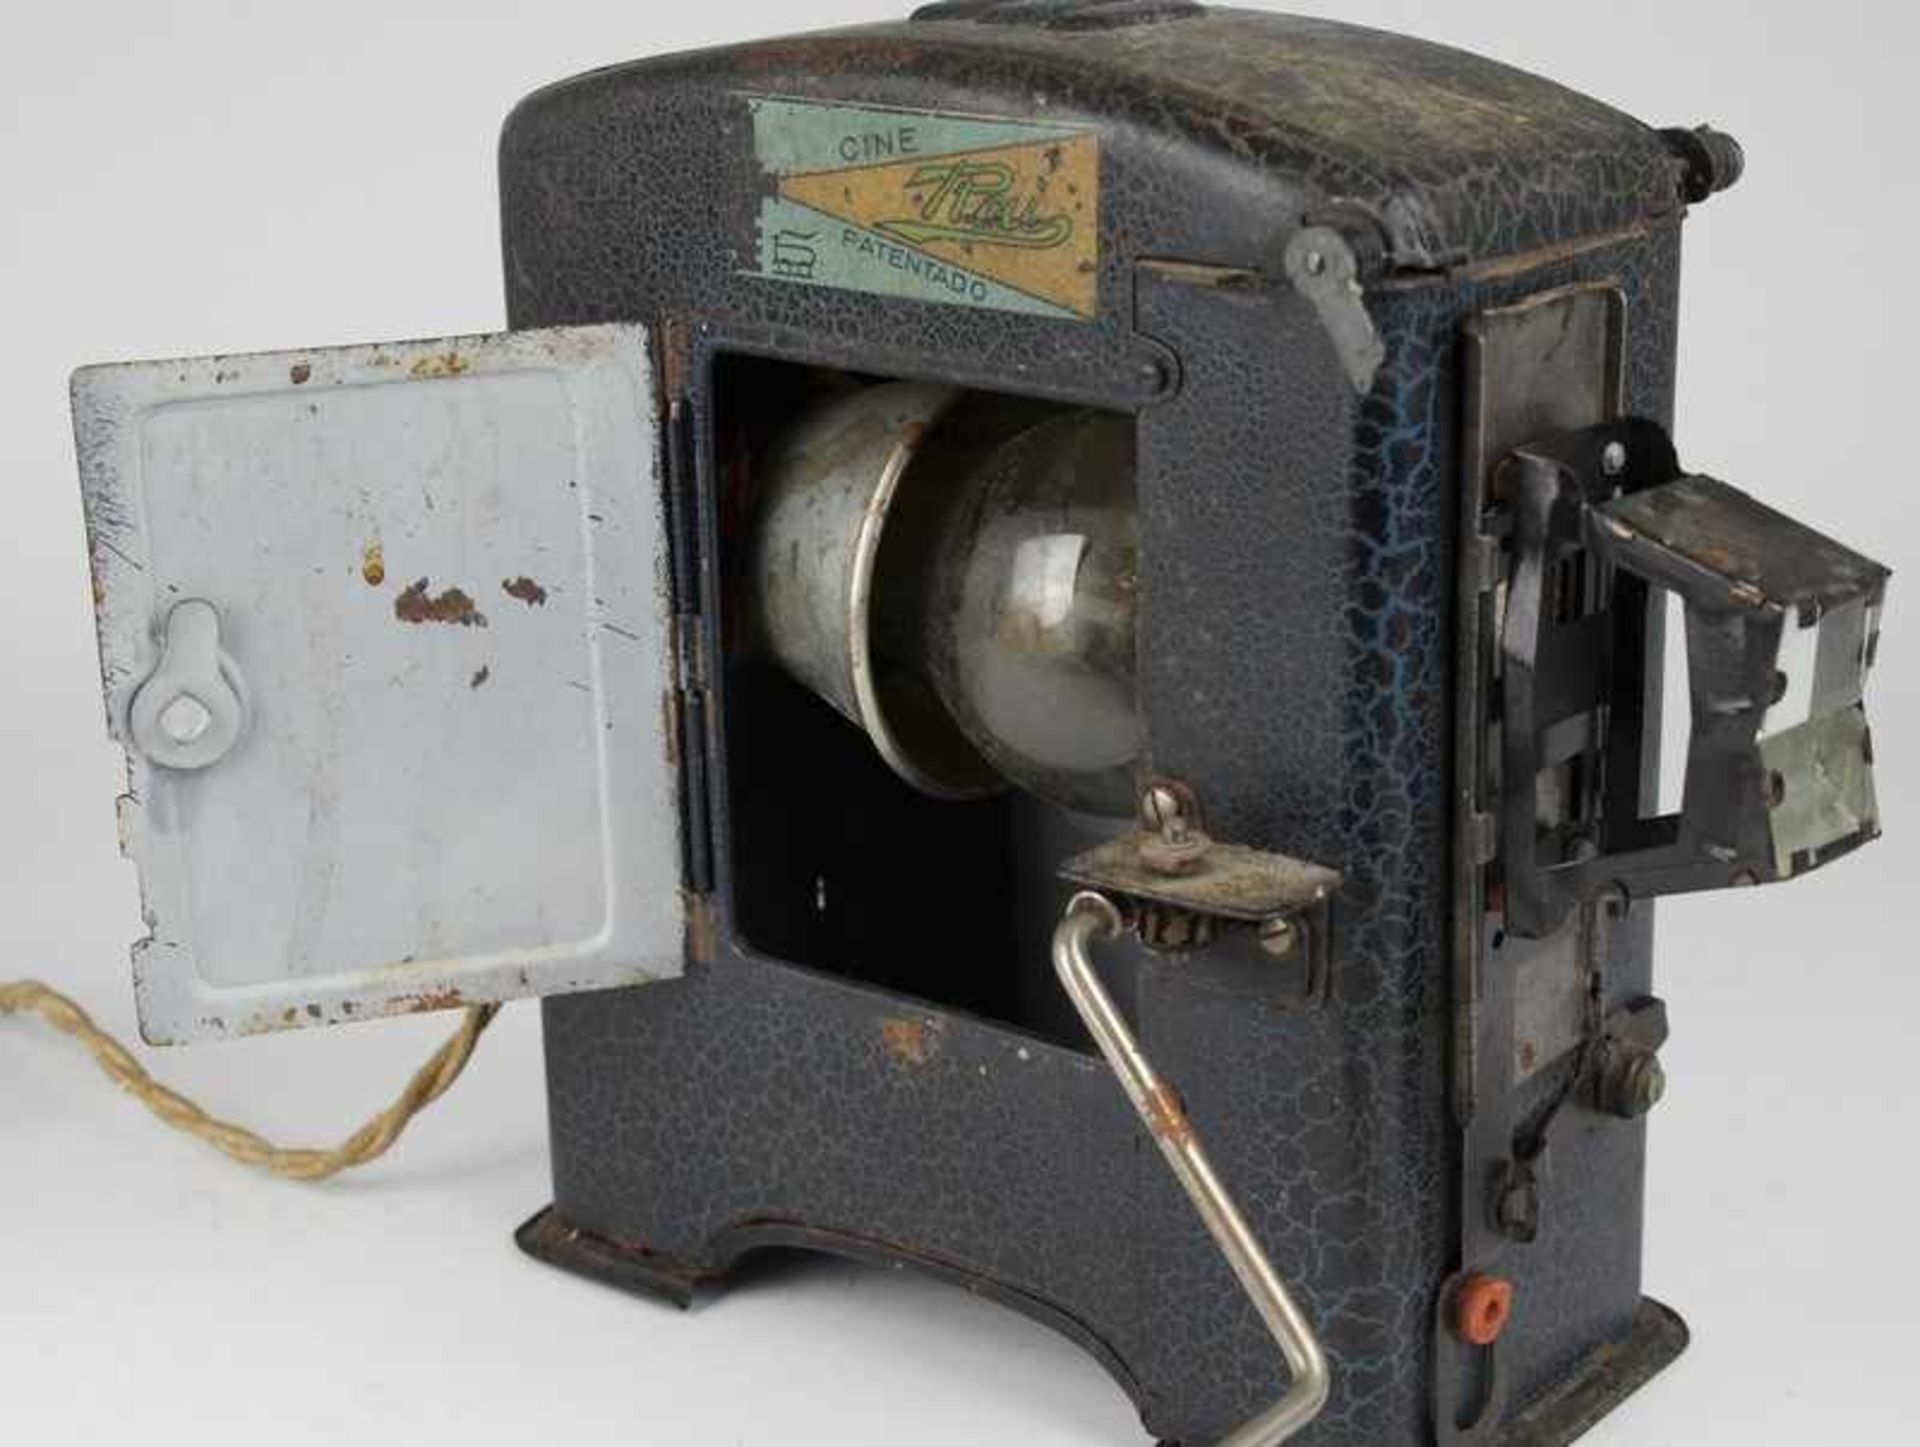 Blechspielzeug Filmprojektor, gem. Cine Rai Patentado, Spanien, 1930er J., elektrisch, Kurbel, Teile - Bild 2 aus 2